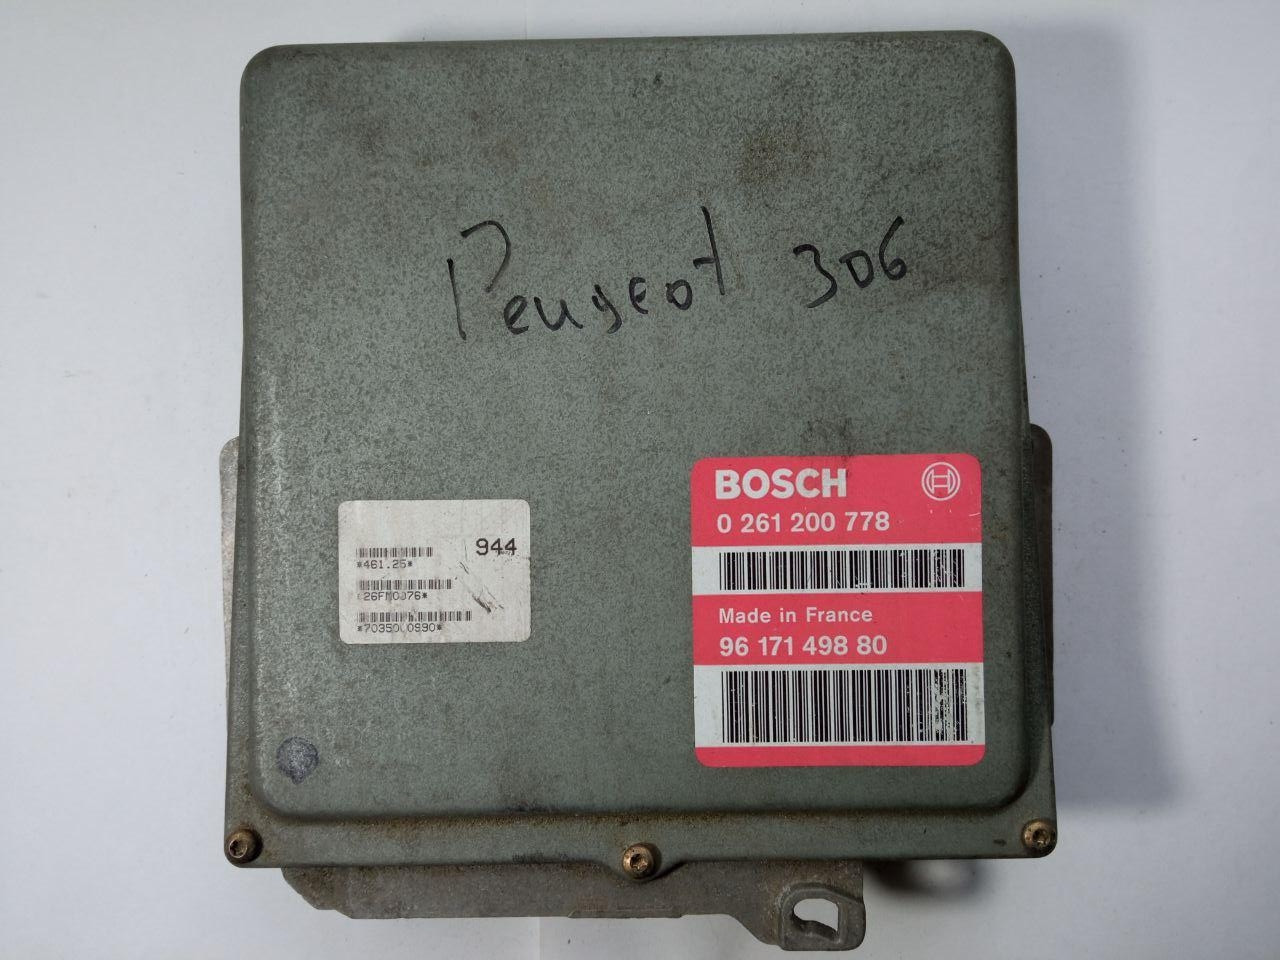 Електронний блок керування Peugeot 306 0261200778 Bosch 0 261 200 778 / 96 171 498 80